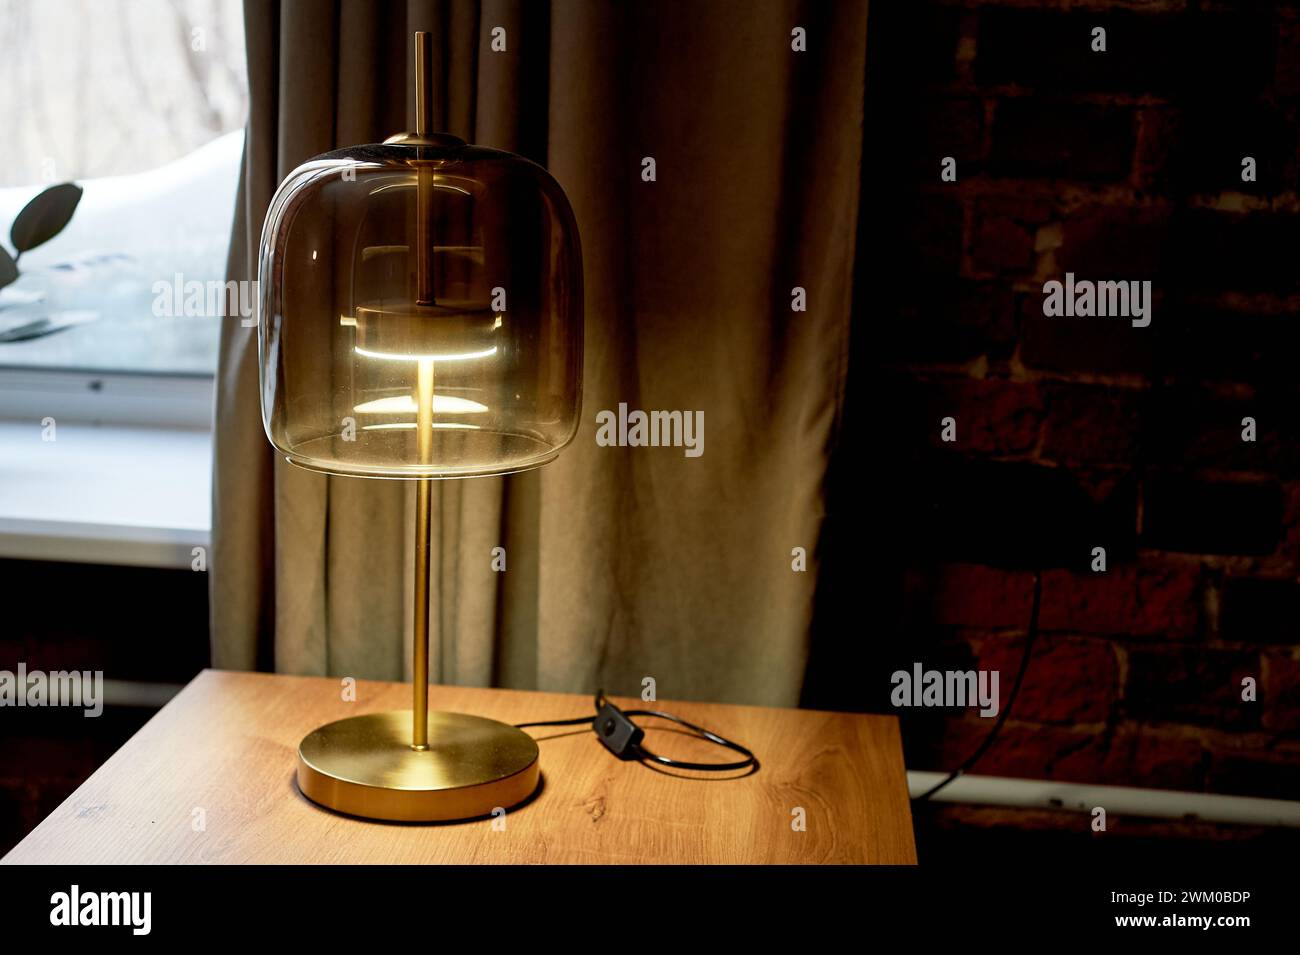 Une lampe design intéressante sur une base dorée avec un verre épais. Style anglais. Intérieur classique Banque D'Images